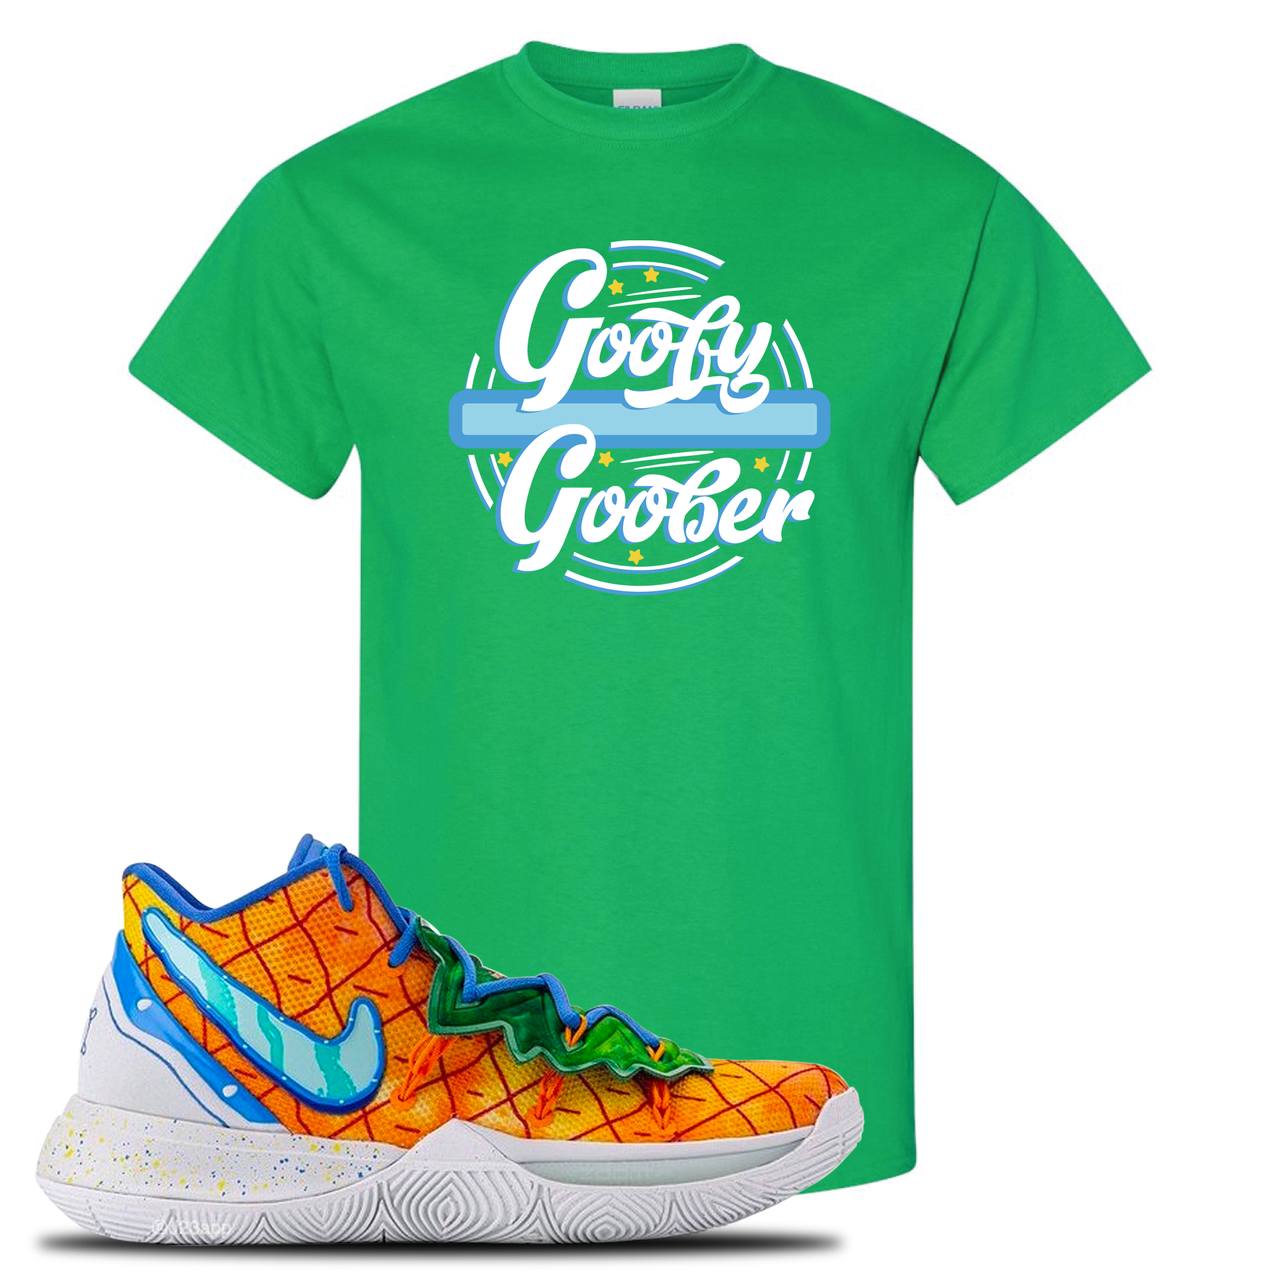 Kyrie 5 Pineapple House Goofy Goober Irish Green Sneaker Hook Up T-Shirt